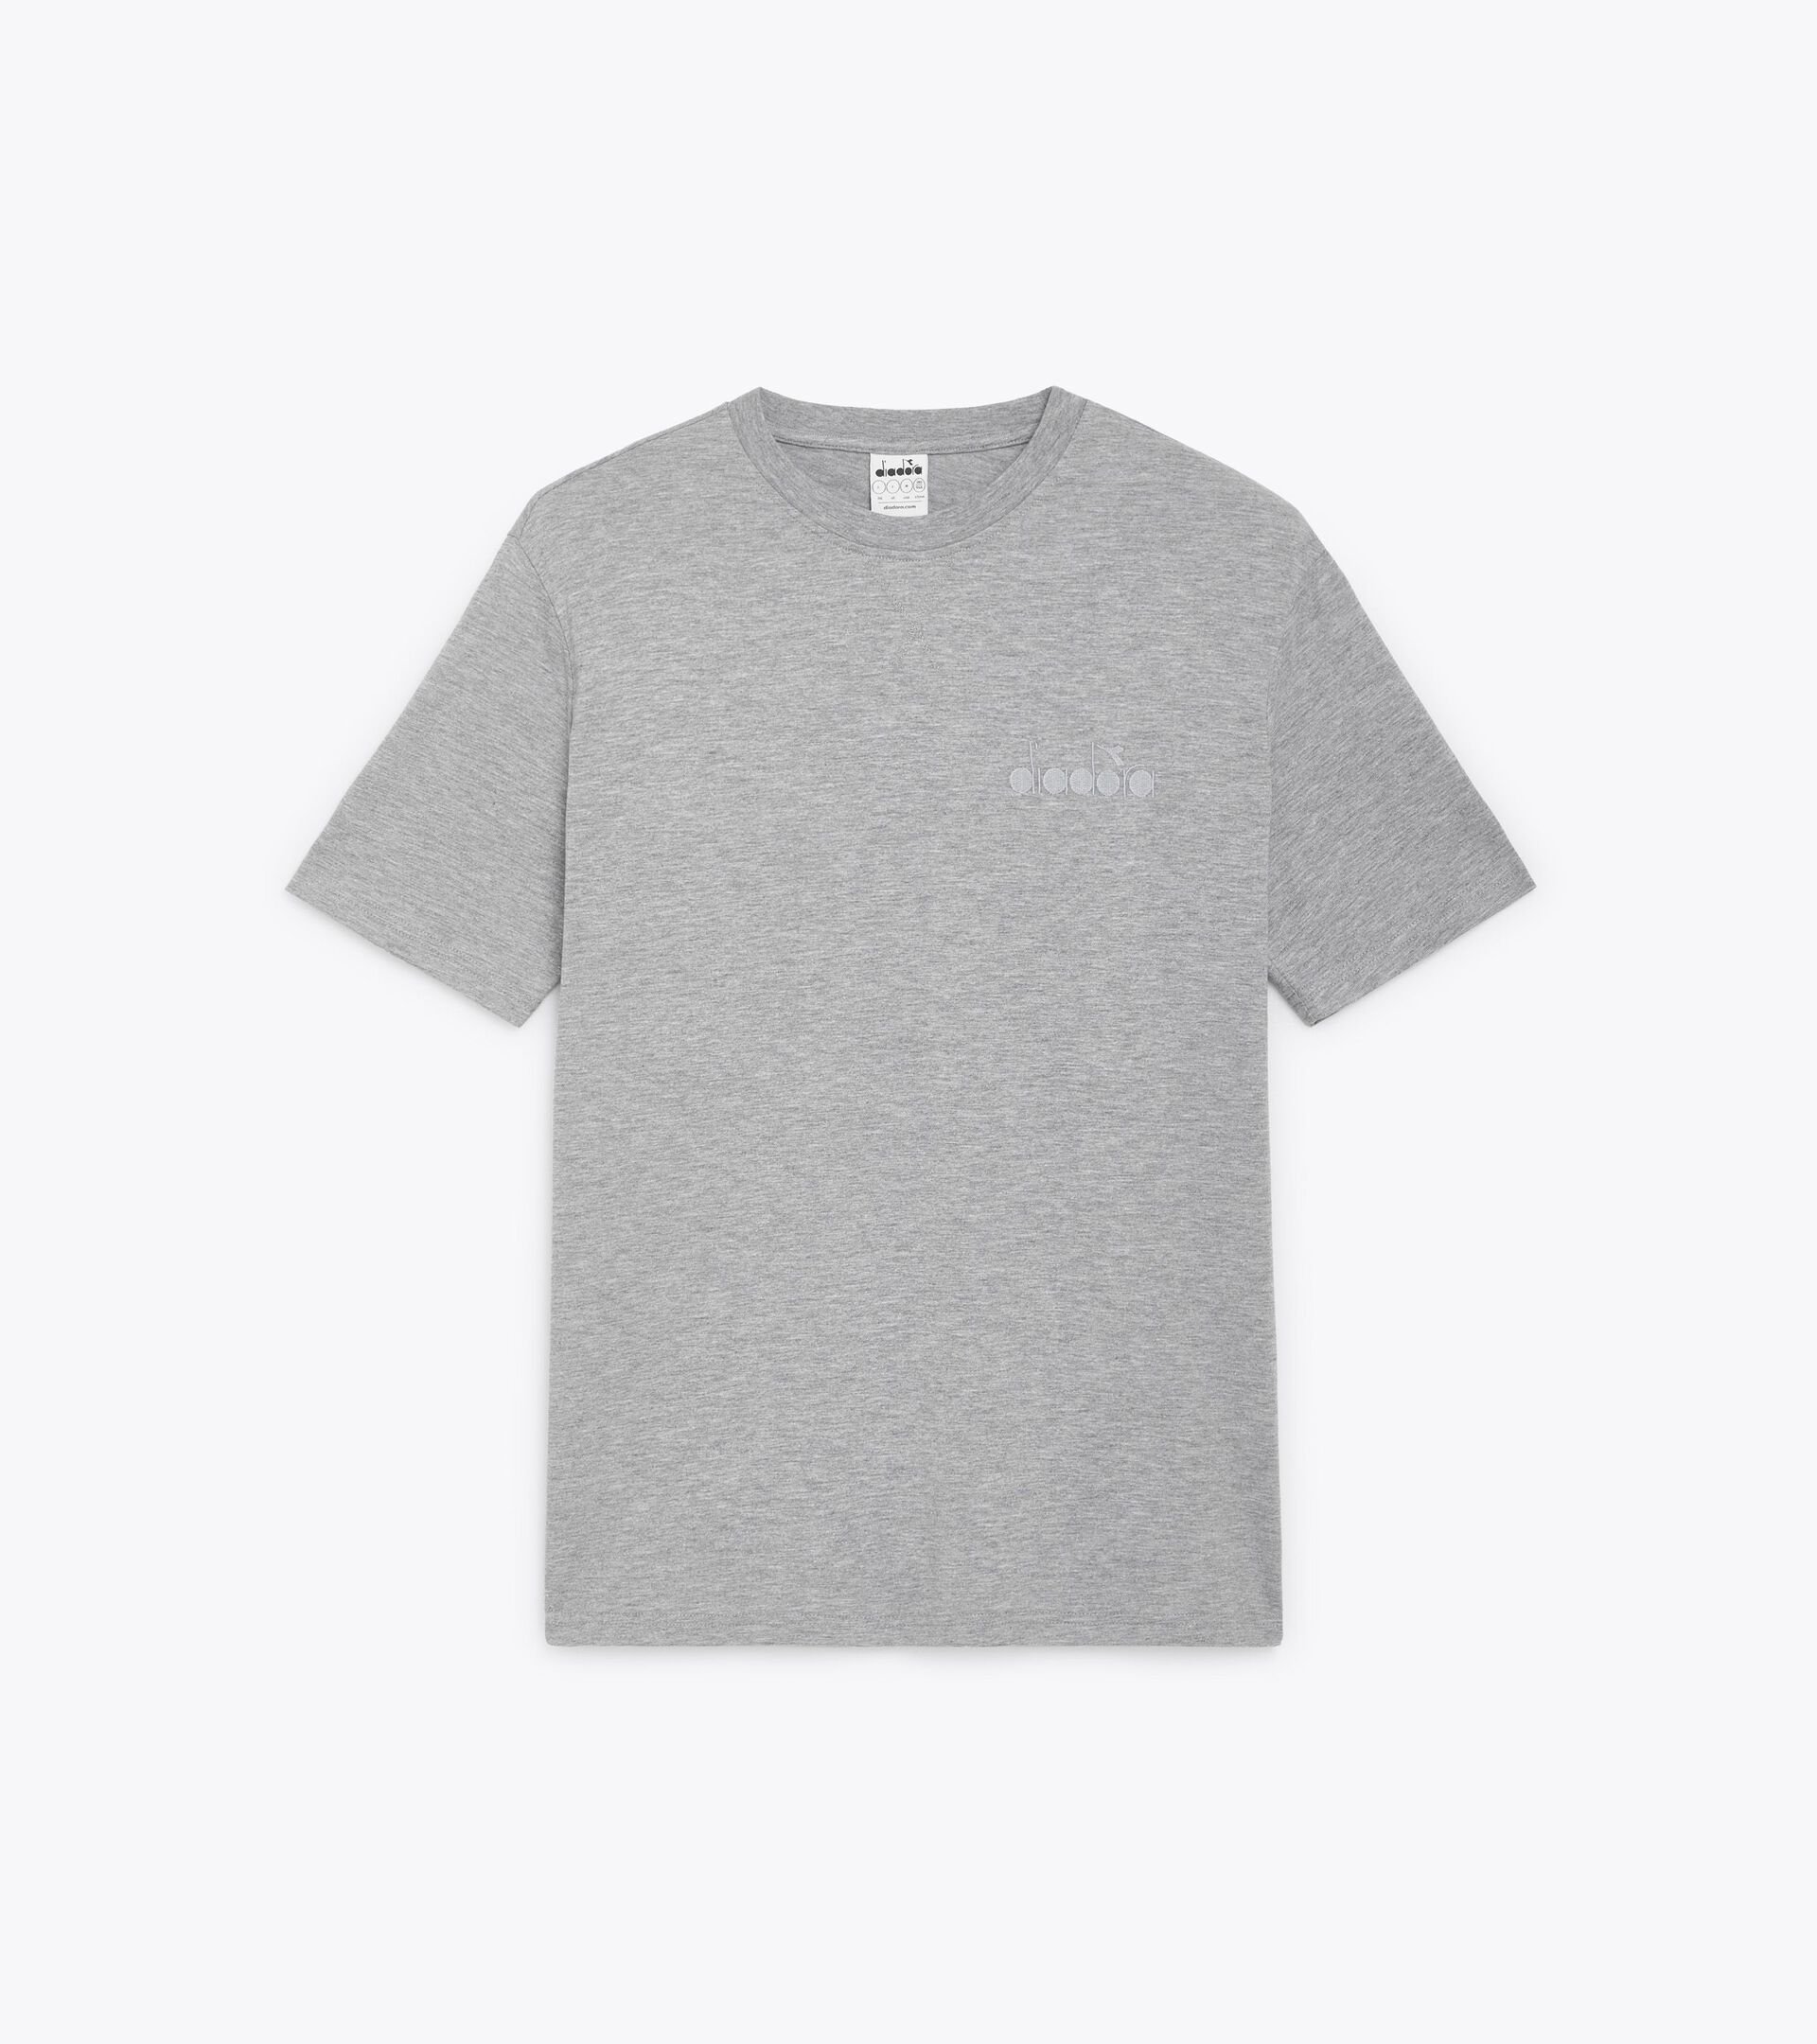 T-SHIRT SS ATHL. LOGO T-shirt - Gender Neutral - Diadora Online Store US